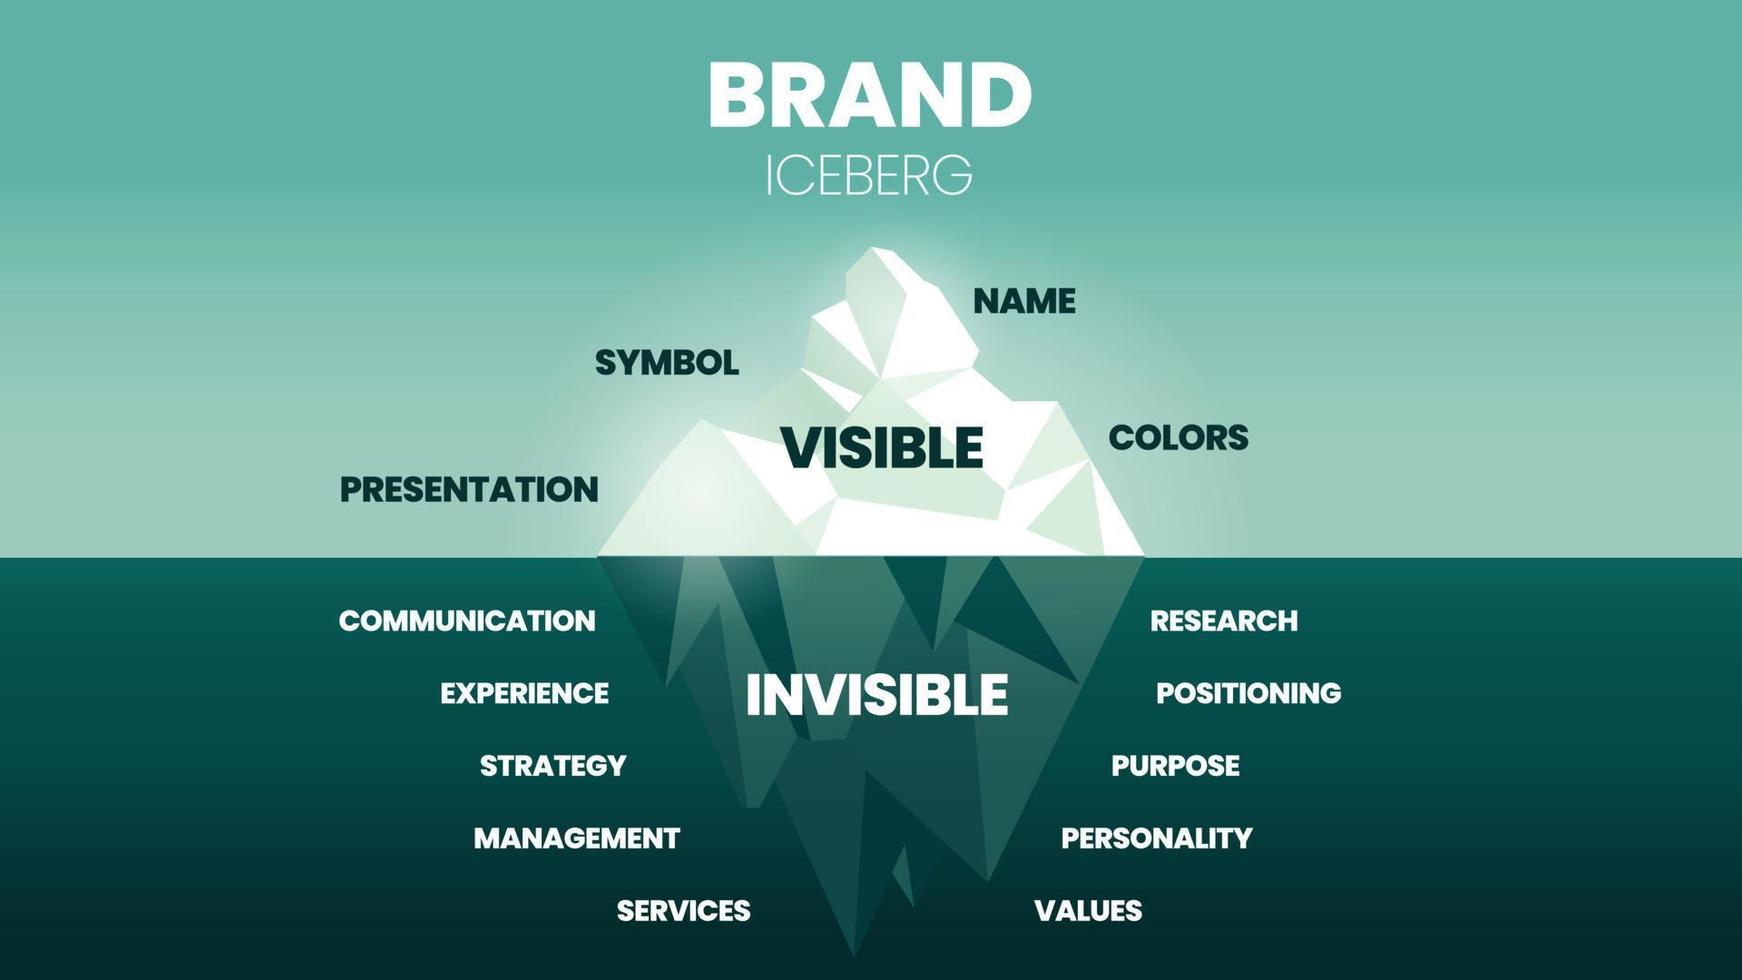 en vektorillustration av varumärke isberg modell koncept har inslag av varumärkesförbättring eller marknadsföringsstrategi, ytan är synlig presentation, symbol och namn, under vattnet är osynlig kommunikation. vektor